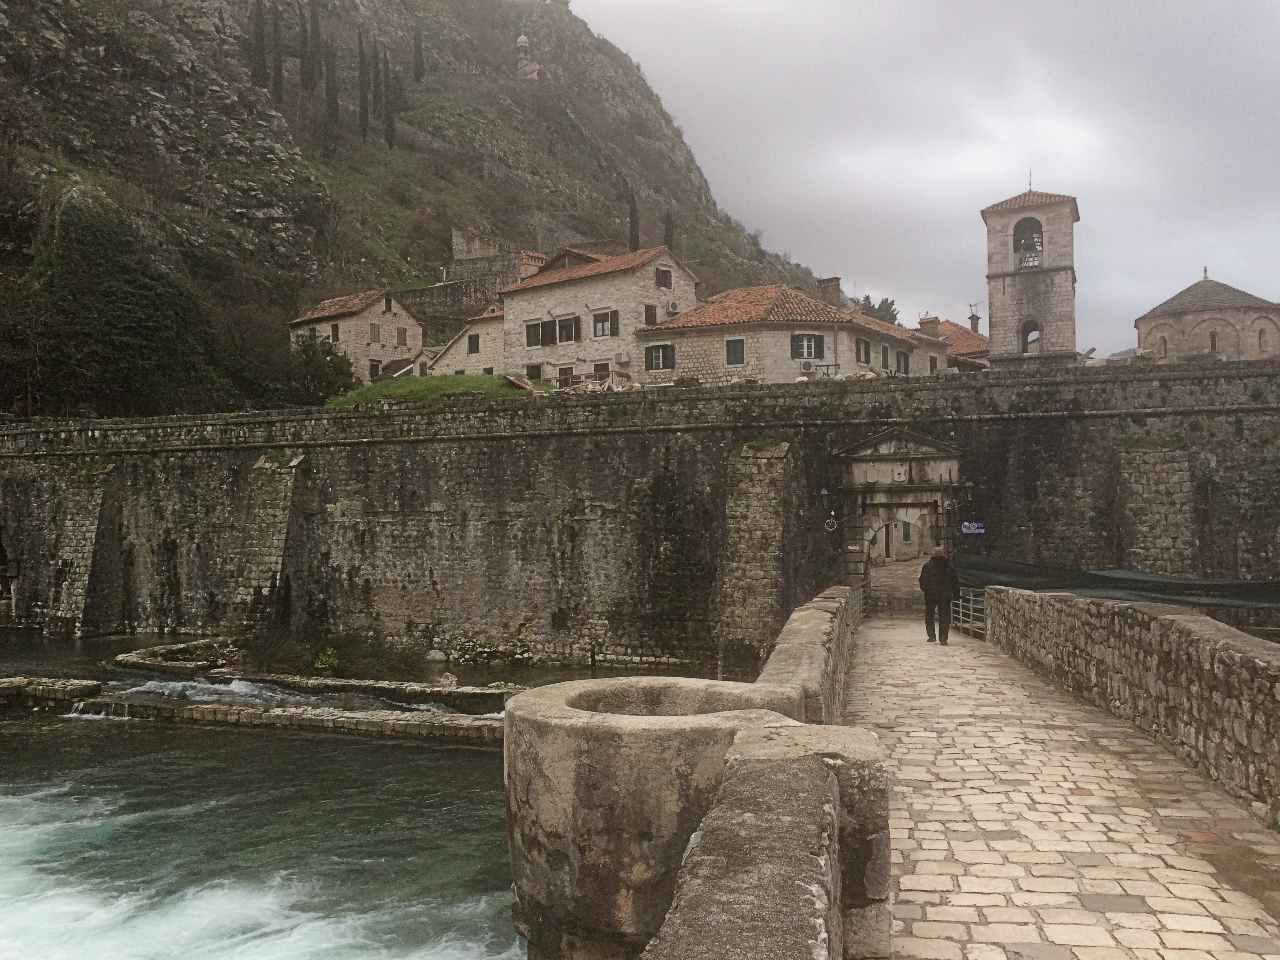 Kotor City walls along Scurda River